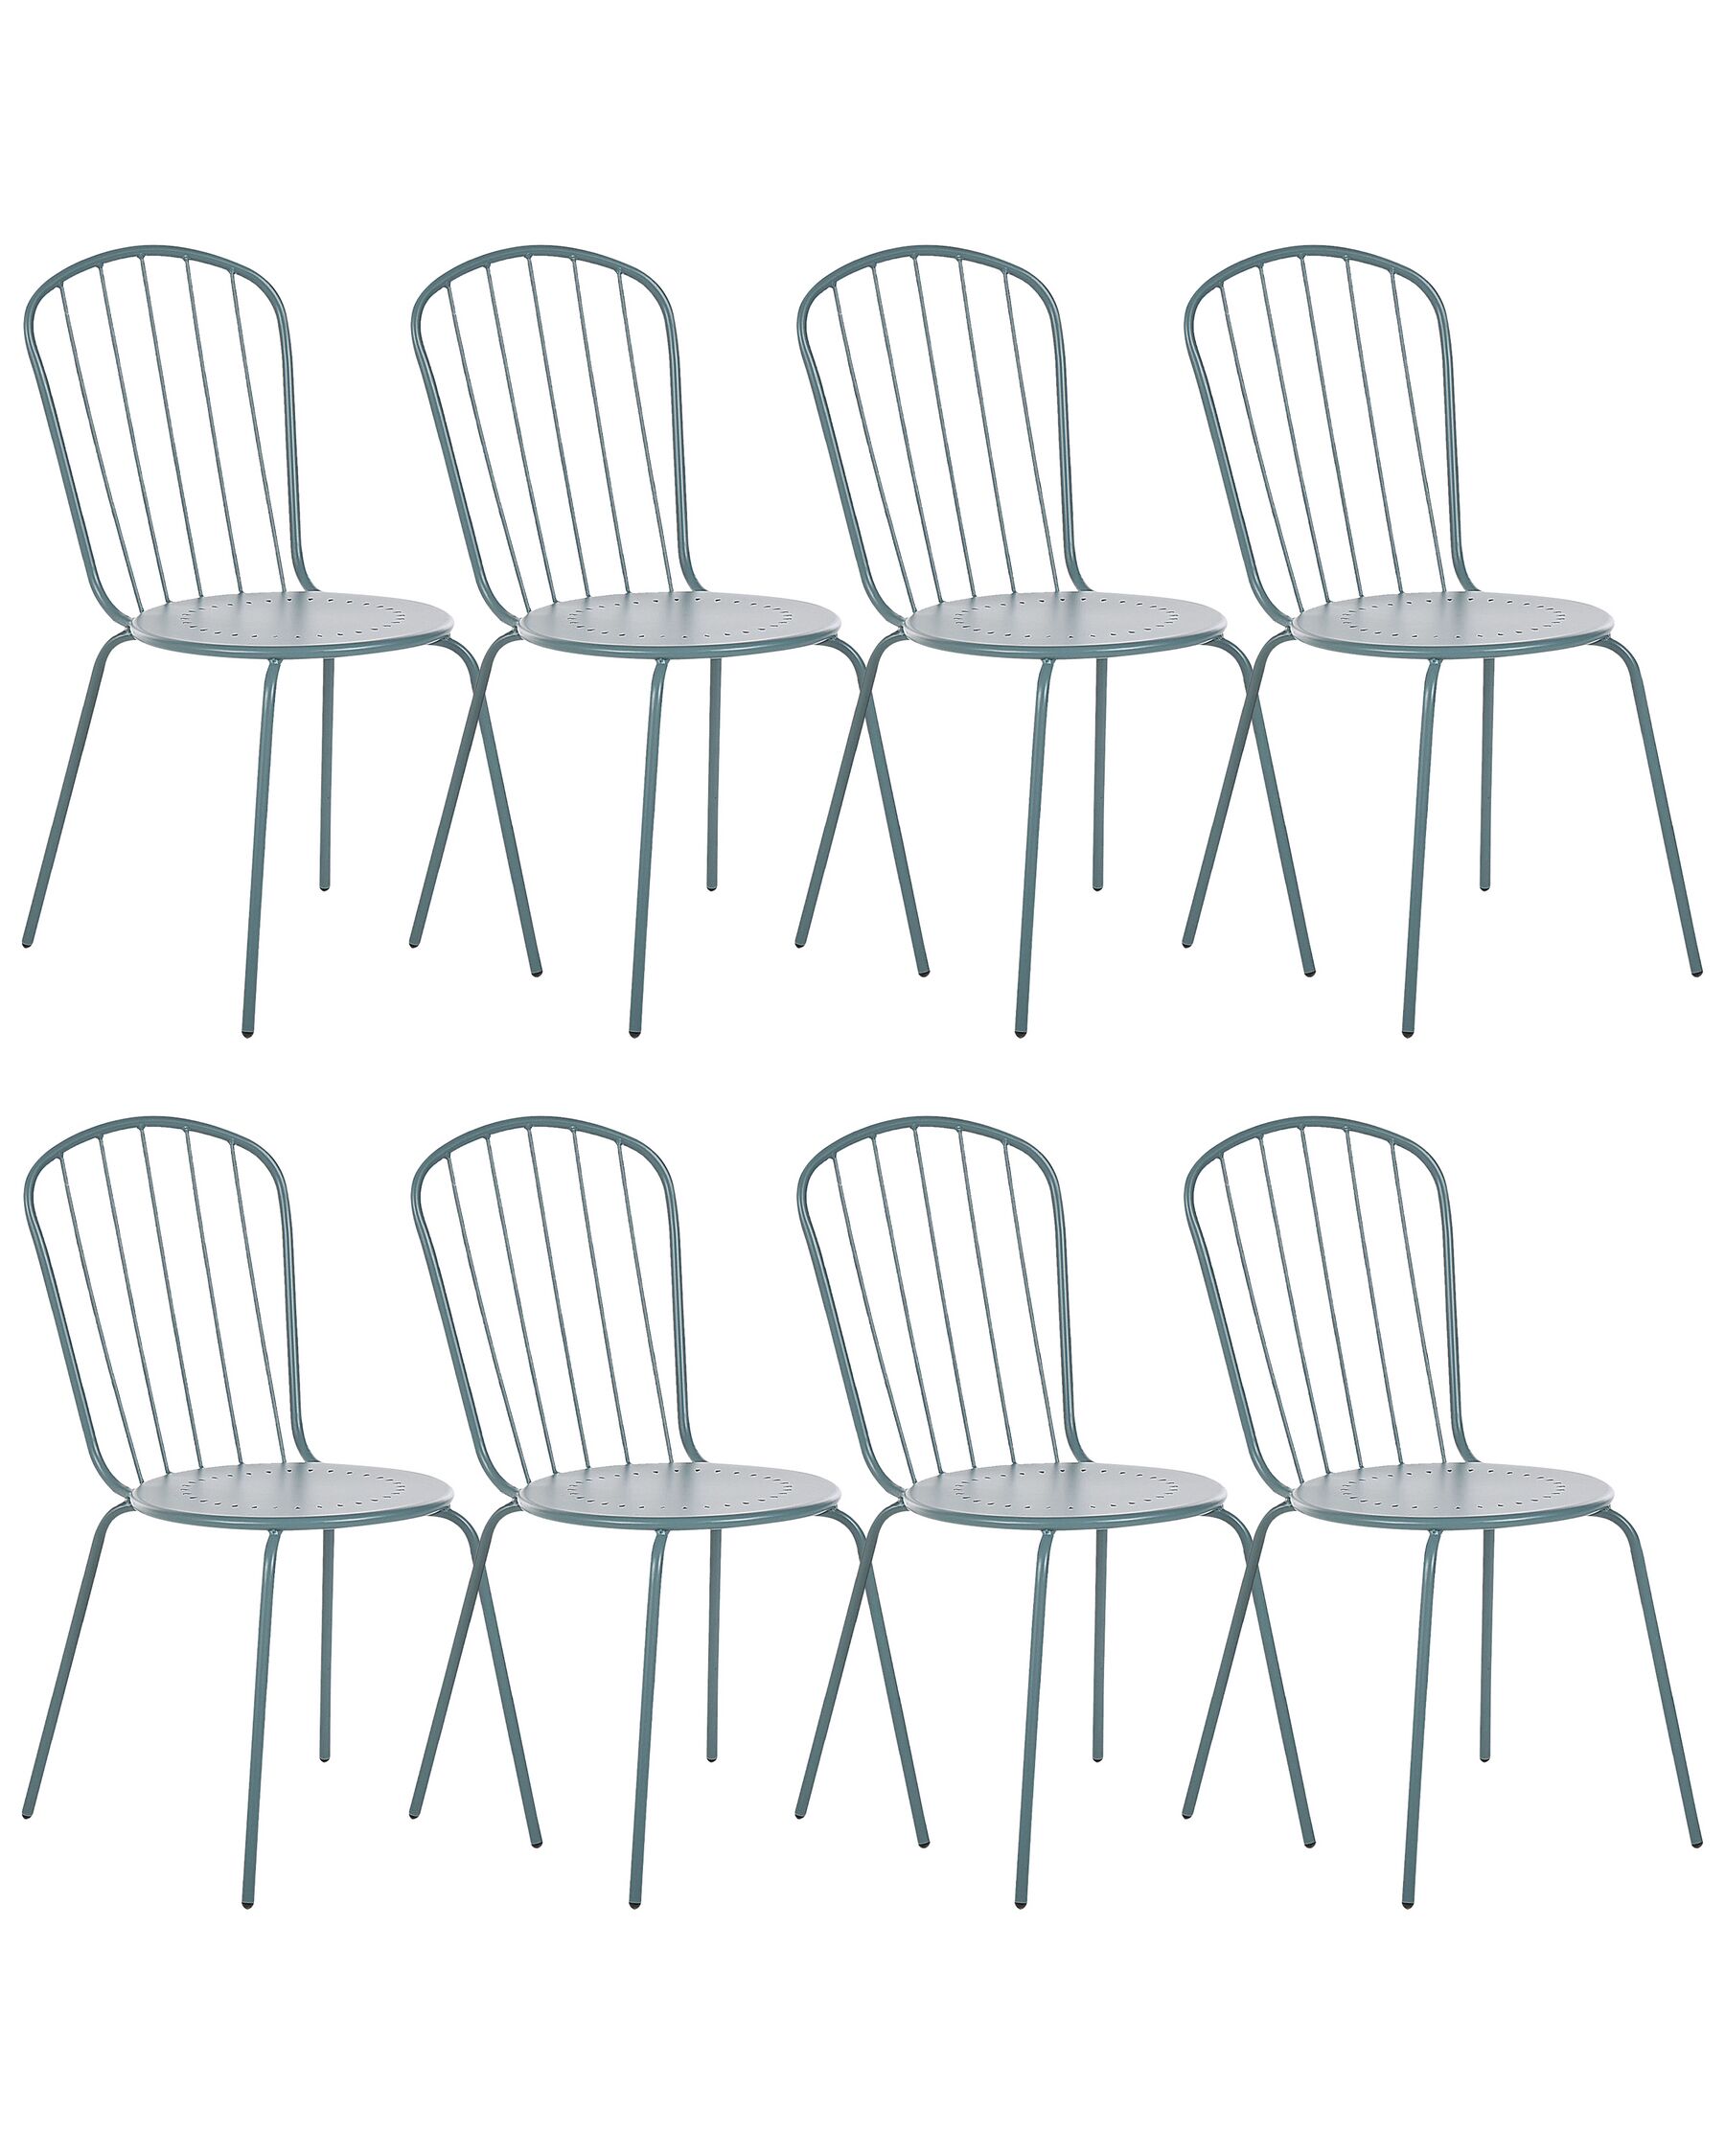 Set of 8 Metal Garden Chairs Light Blue CALVI_815616